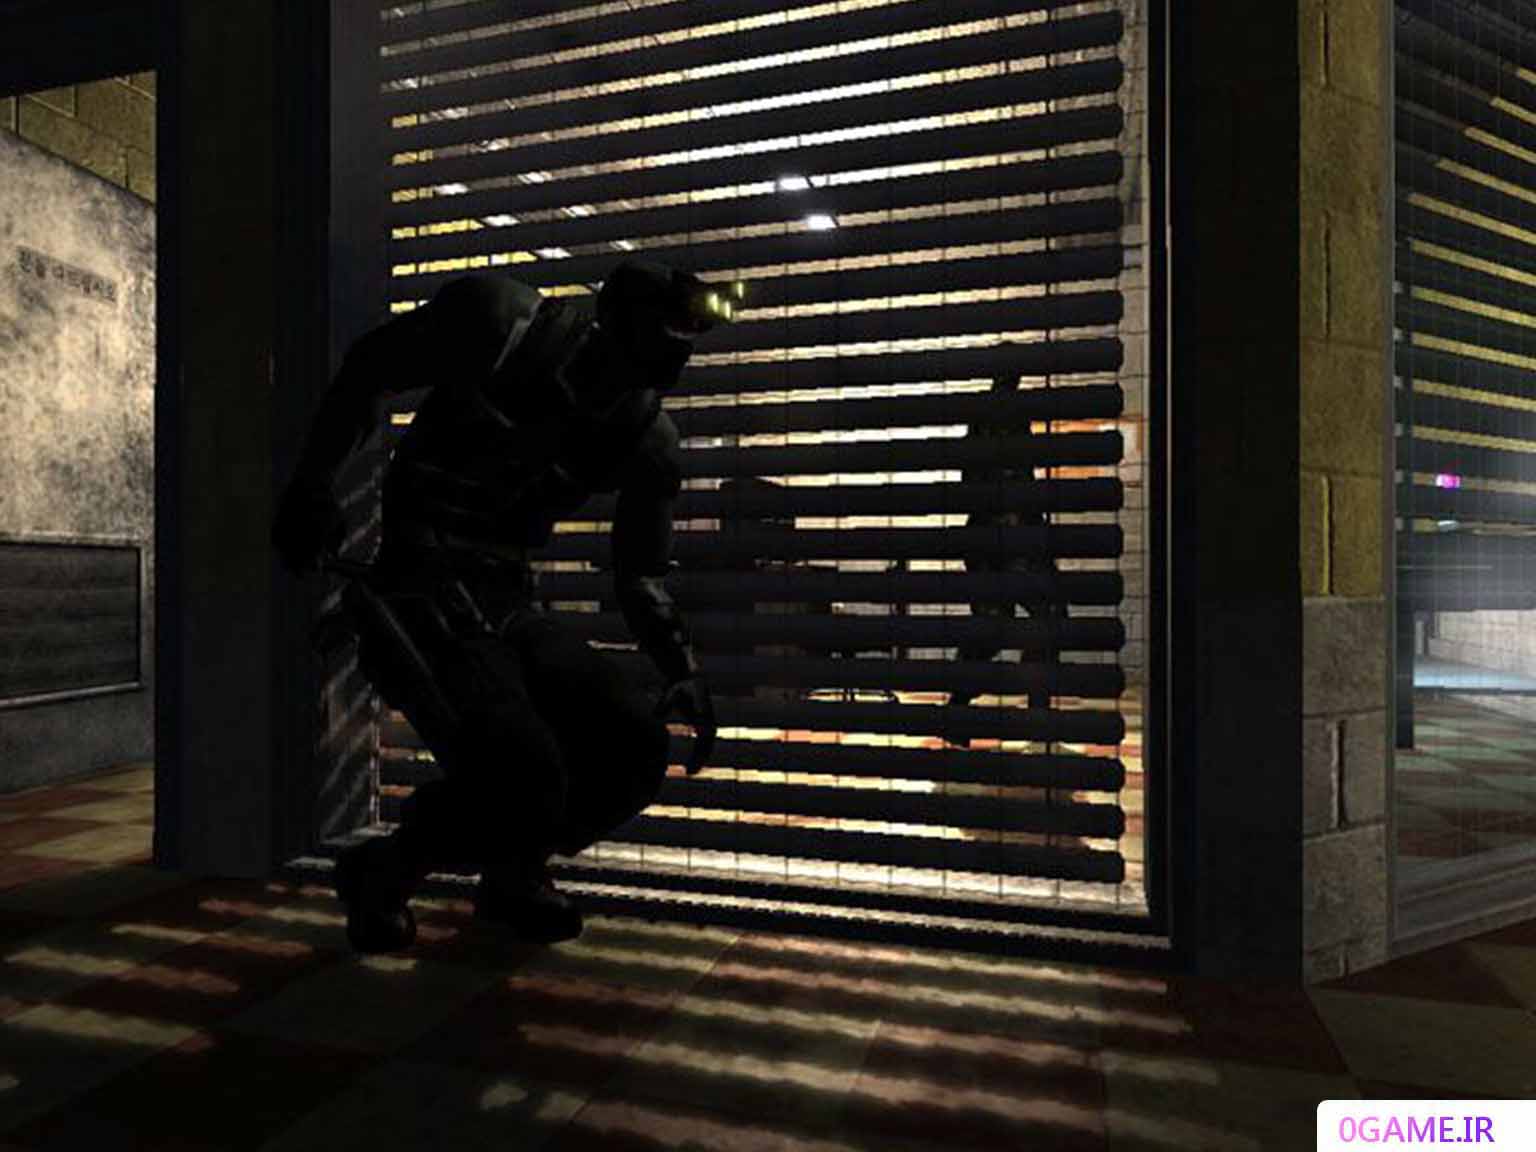 دانلود بازی اسپلینتر سل 3 (Tom Clancy's Splinter Cell) نسخه کامل برای کامپیوتر